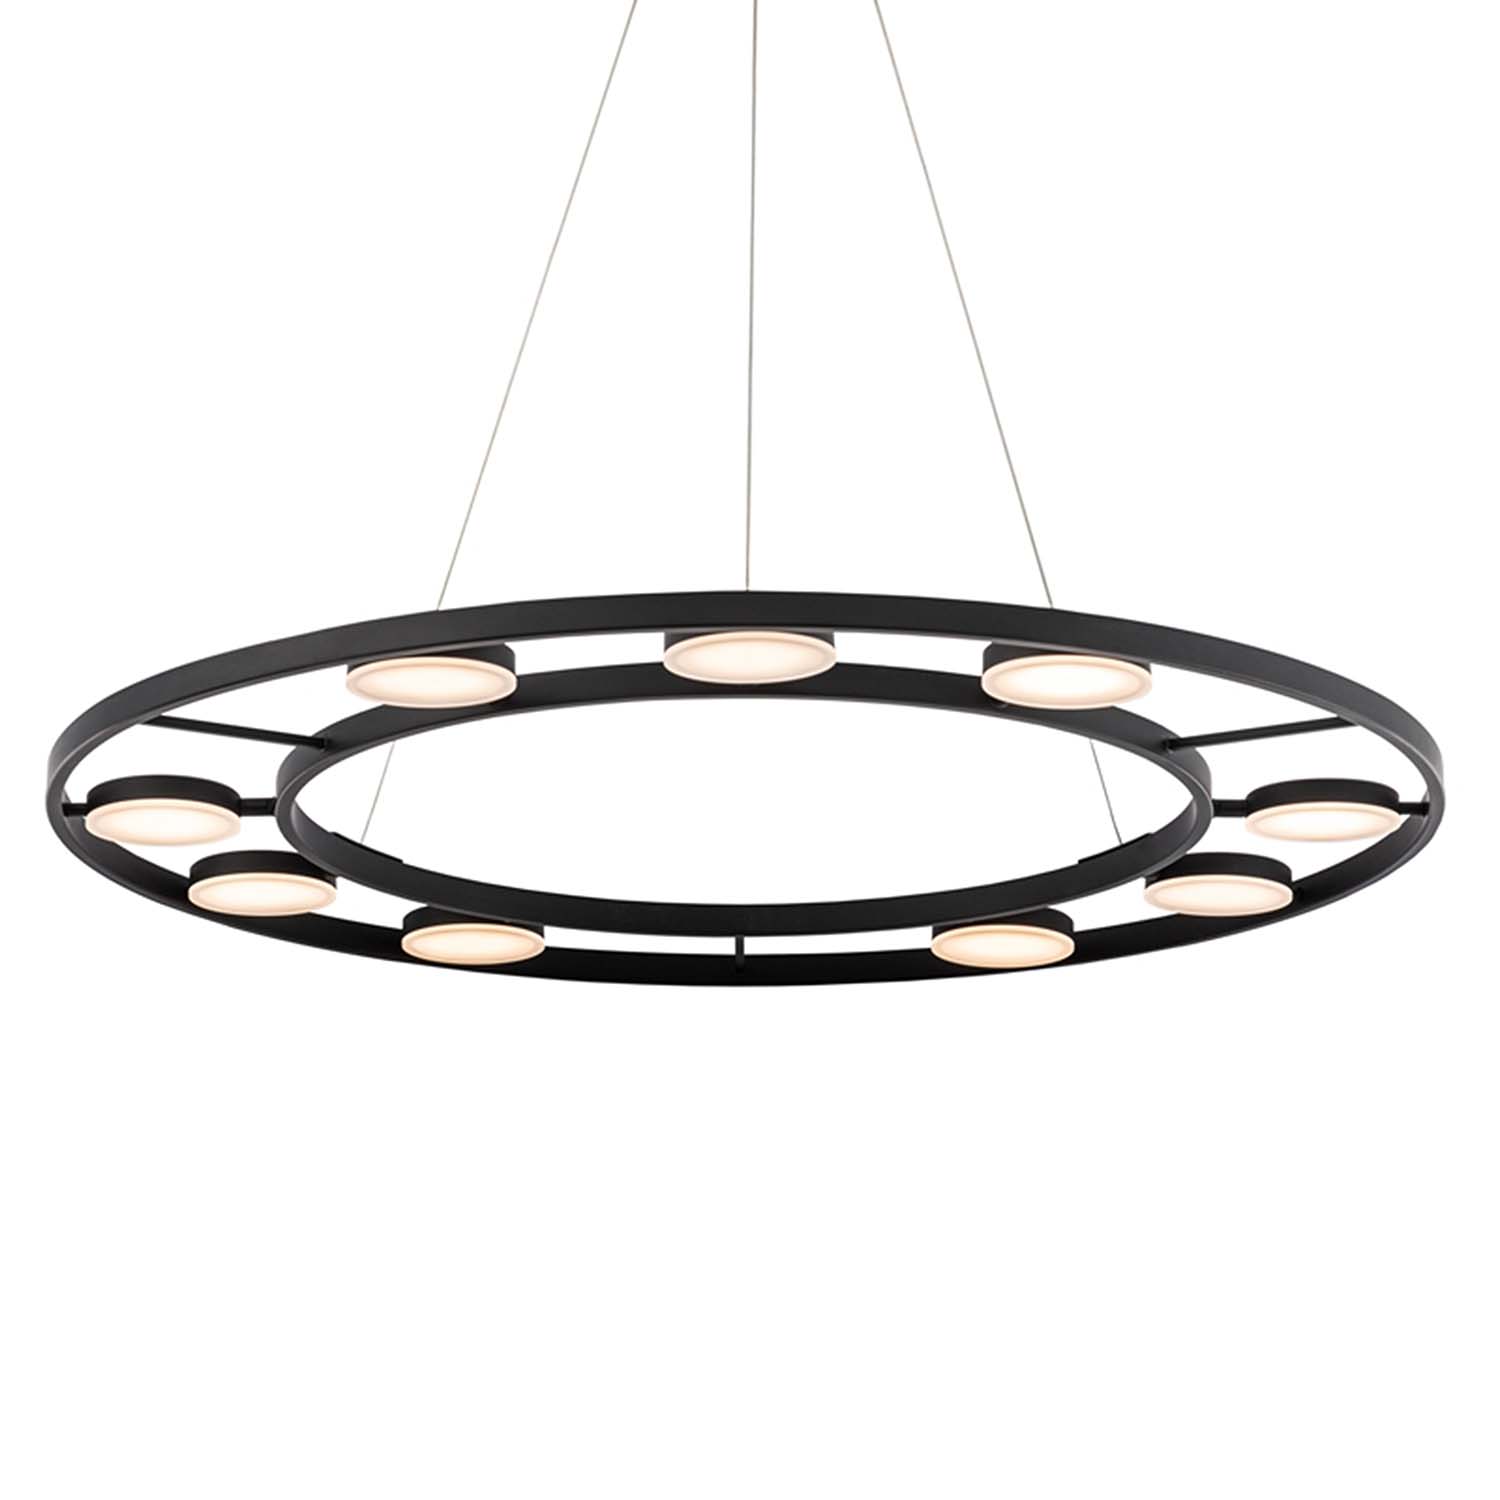 FAD - Circular chandelier with adjustable spots